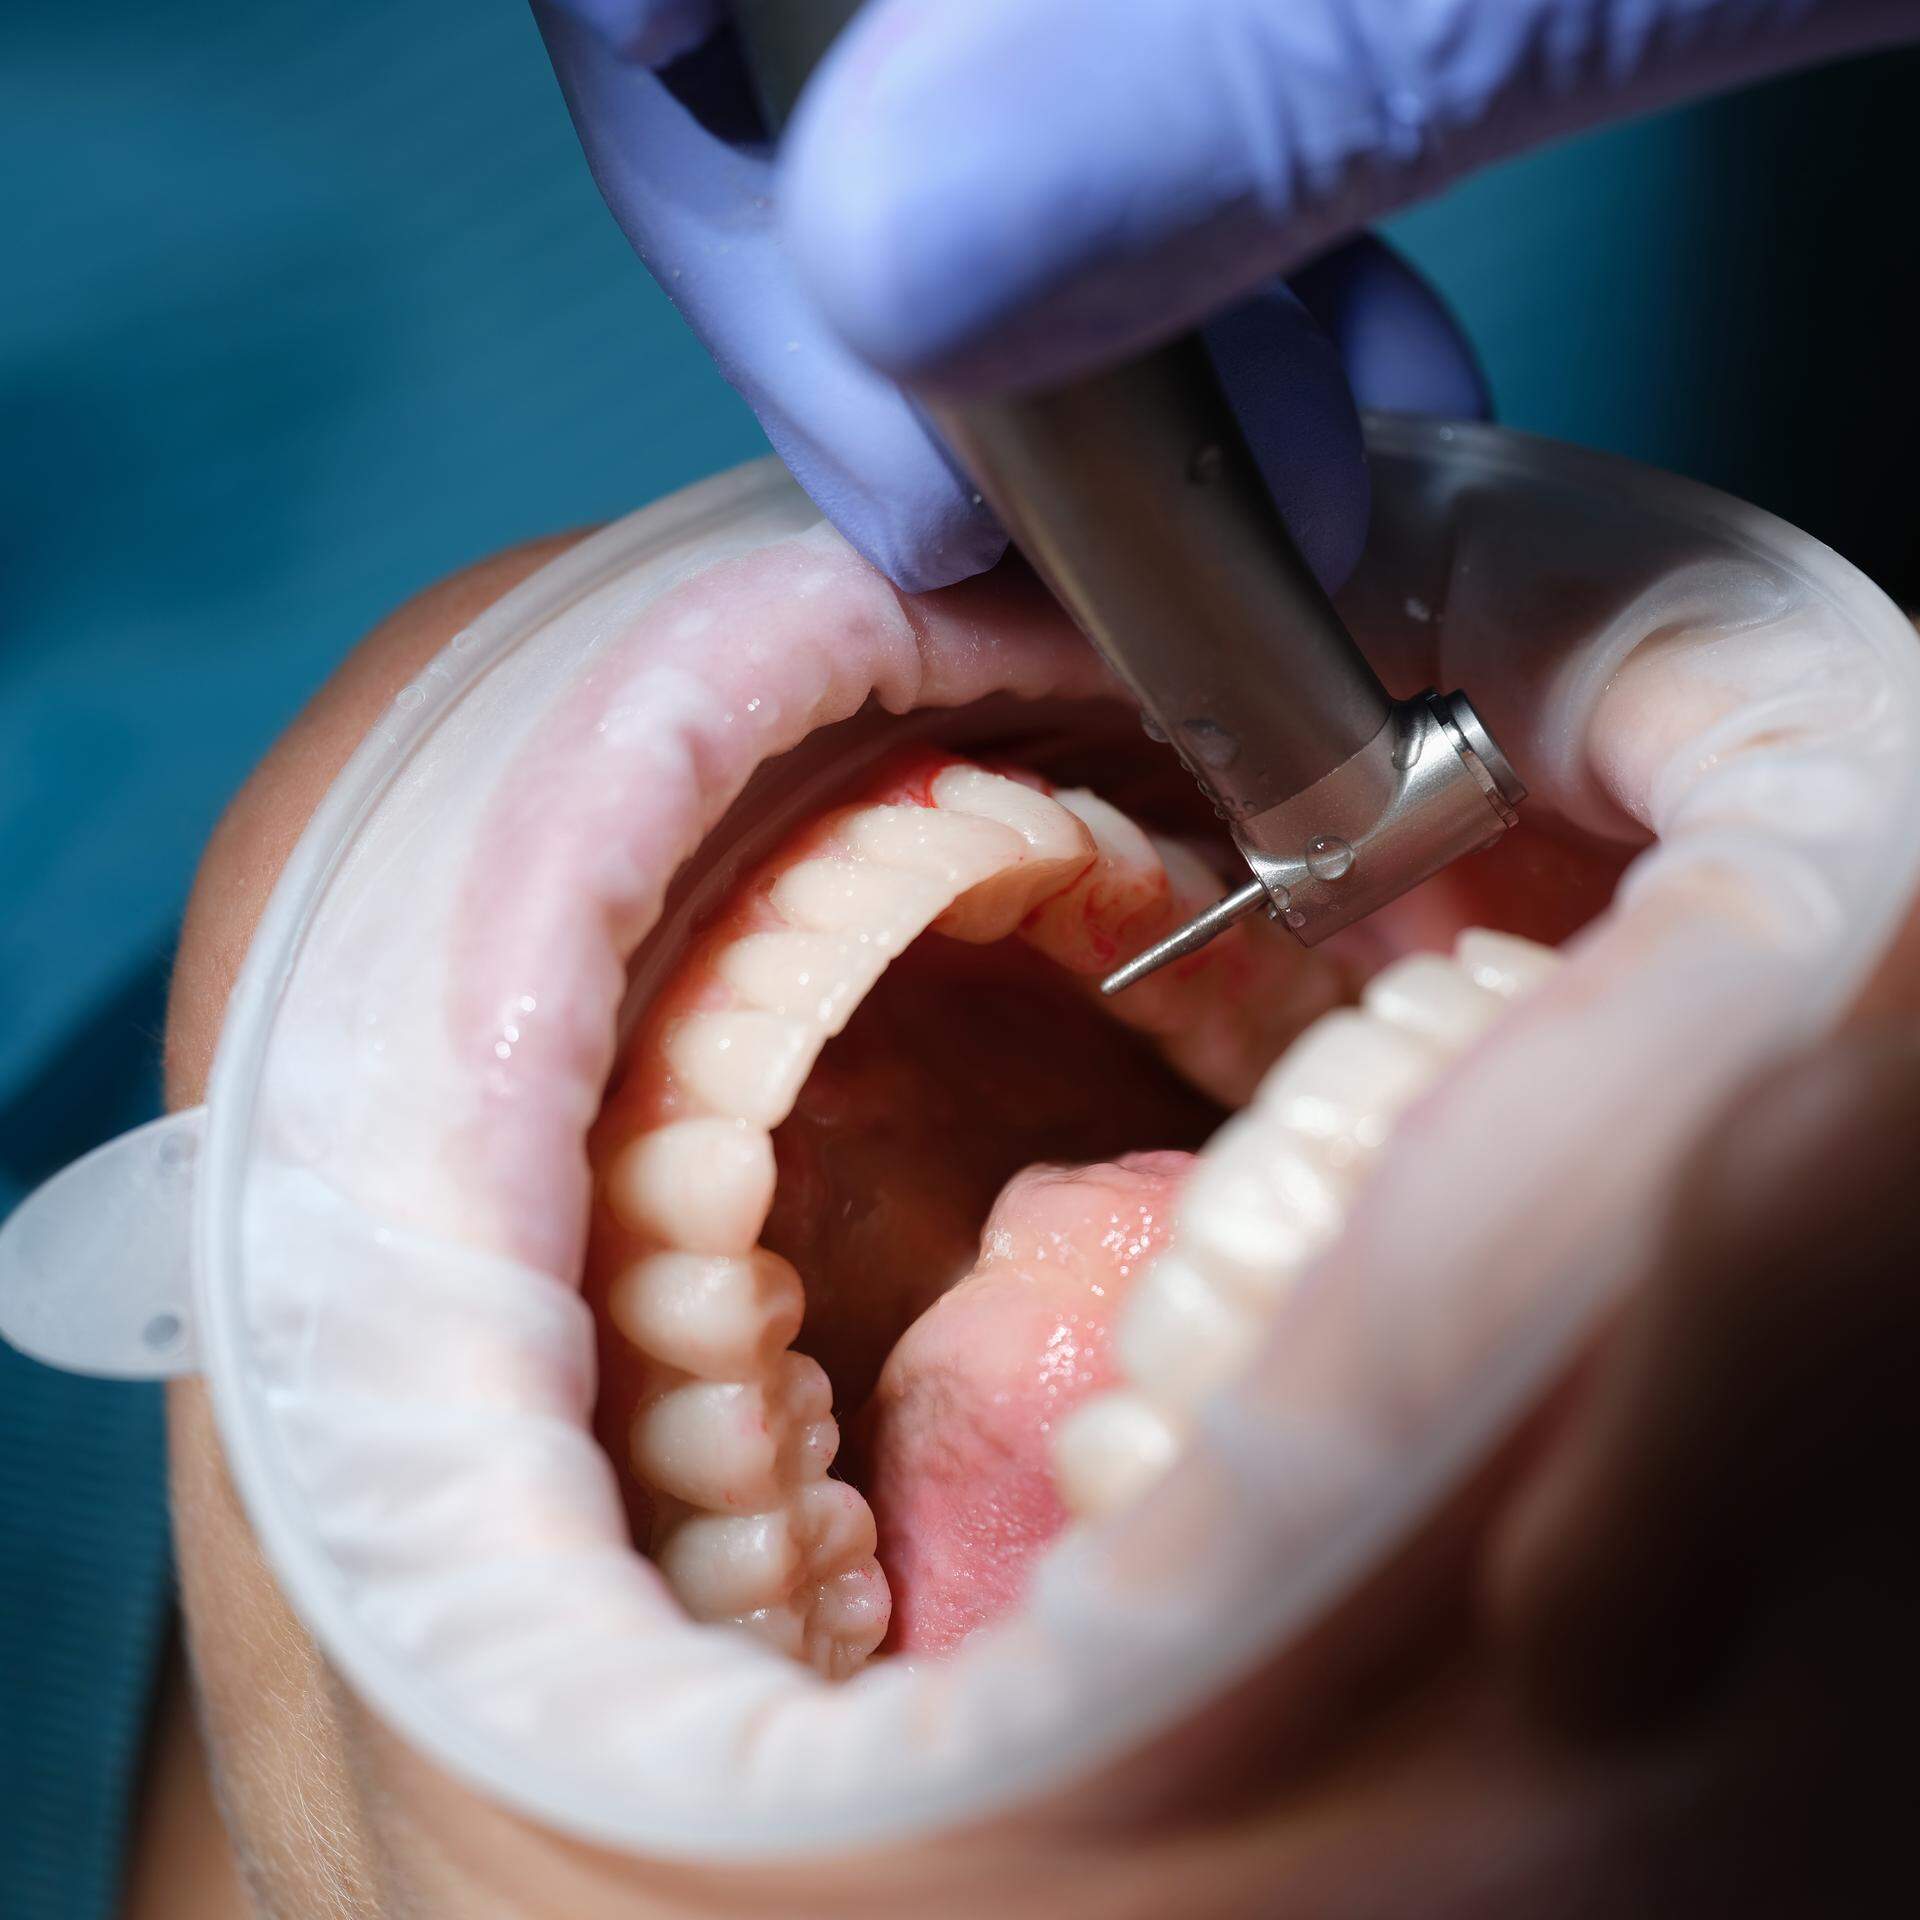 Einem Zahnarzt werden Behandlungsfehler und mangelnde Hygiene vorgeworfen.